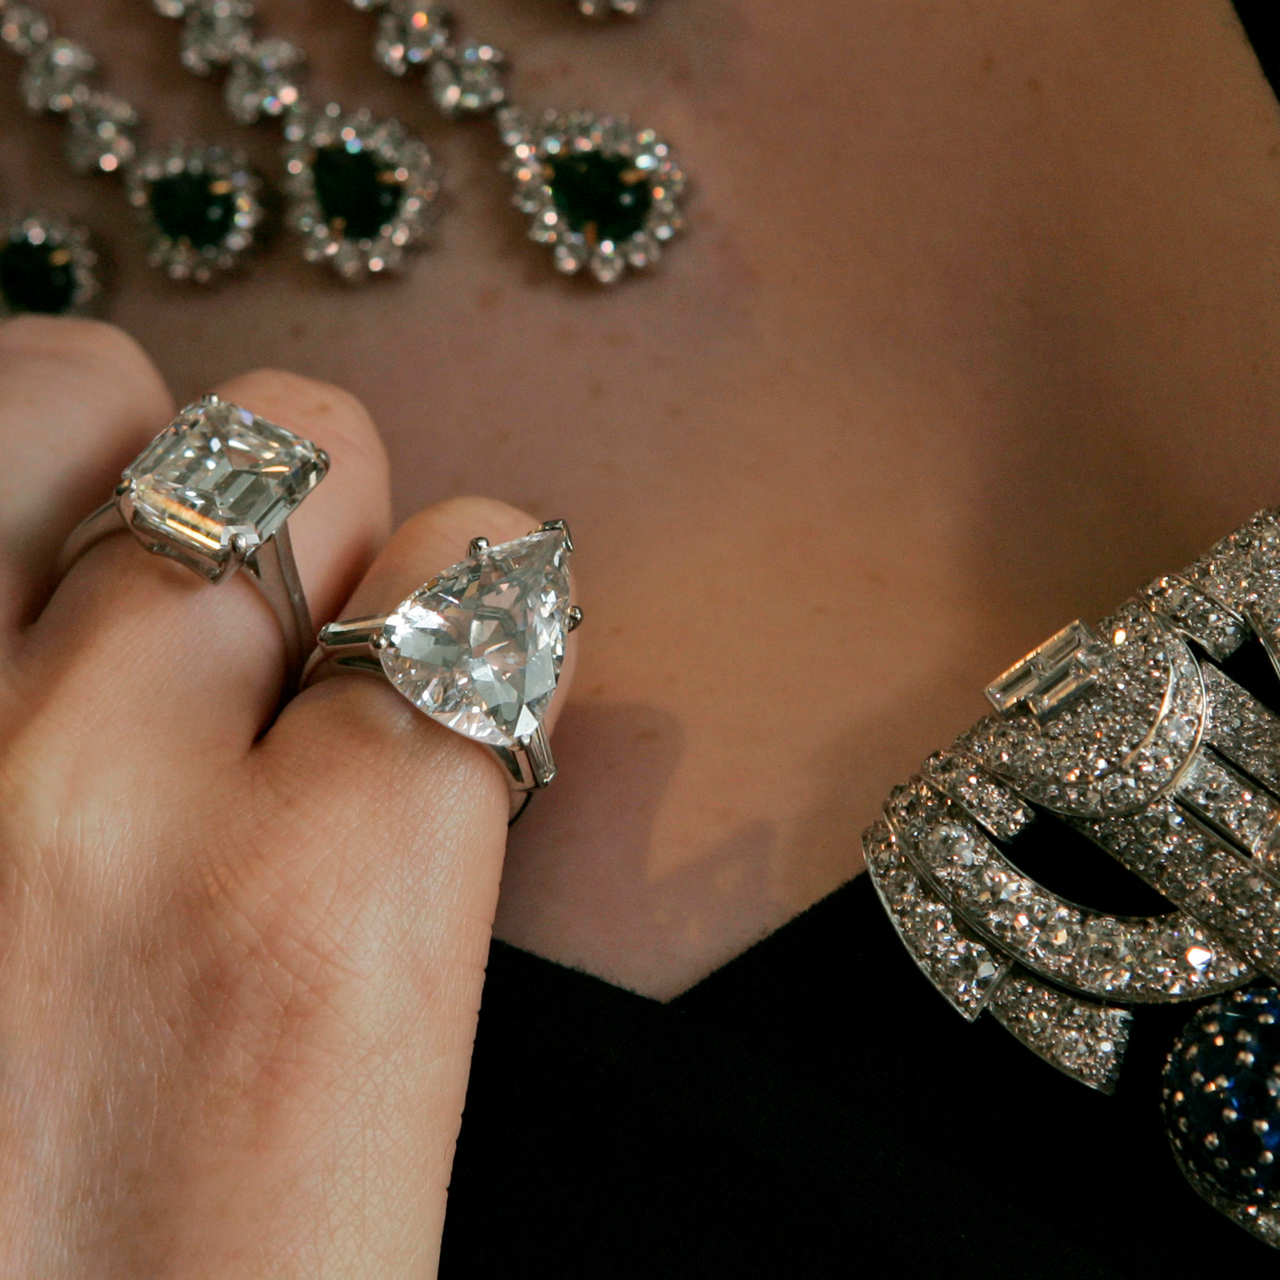 Украденные серьги. Алмаз великан. Девушка продает бриллианты. Фото ворованных драгоценностей на стол.